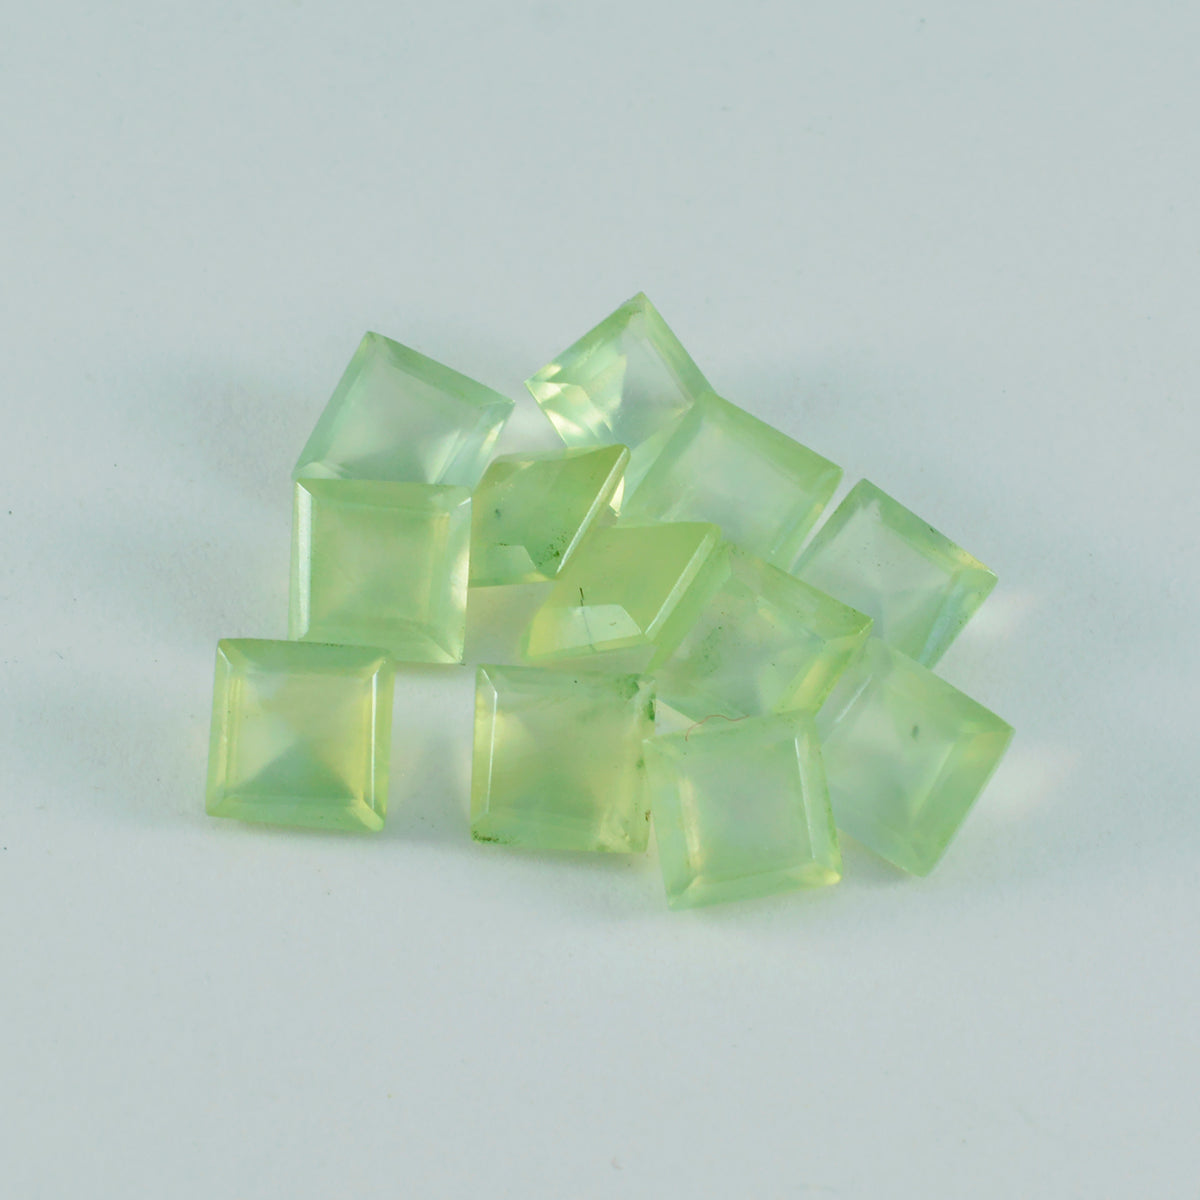 riyogems 1шт зеленый пренит ограненный 6x6 мм квадратной формы красивый качественный камень